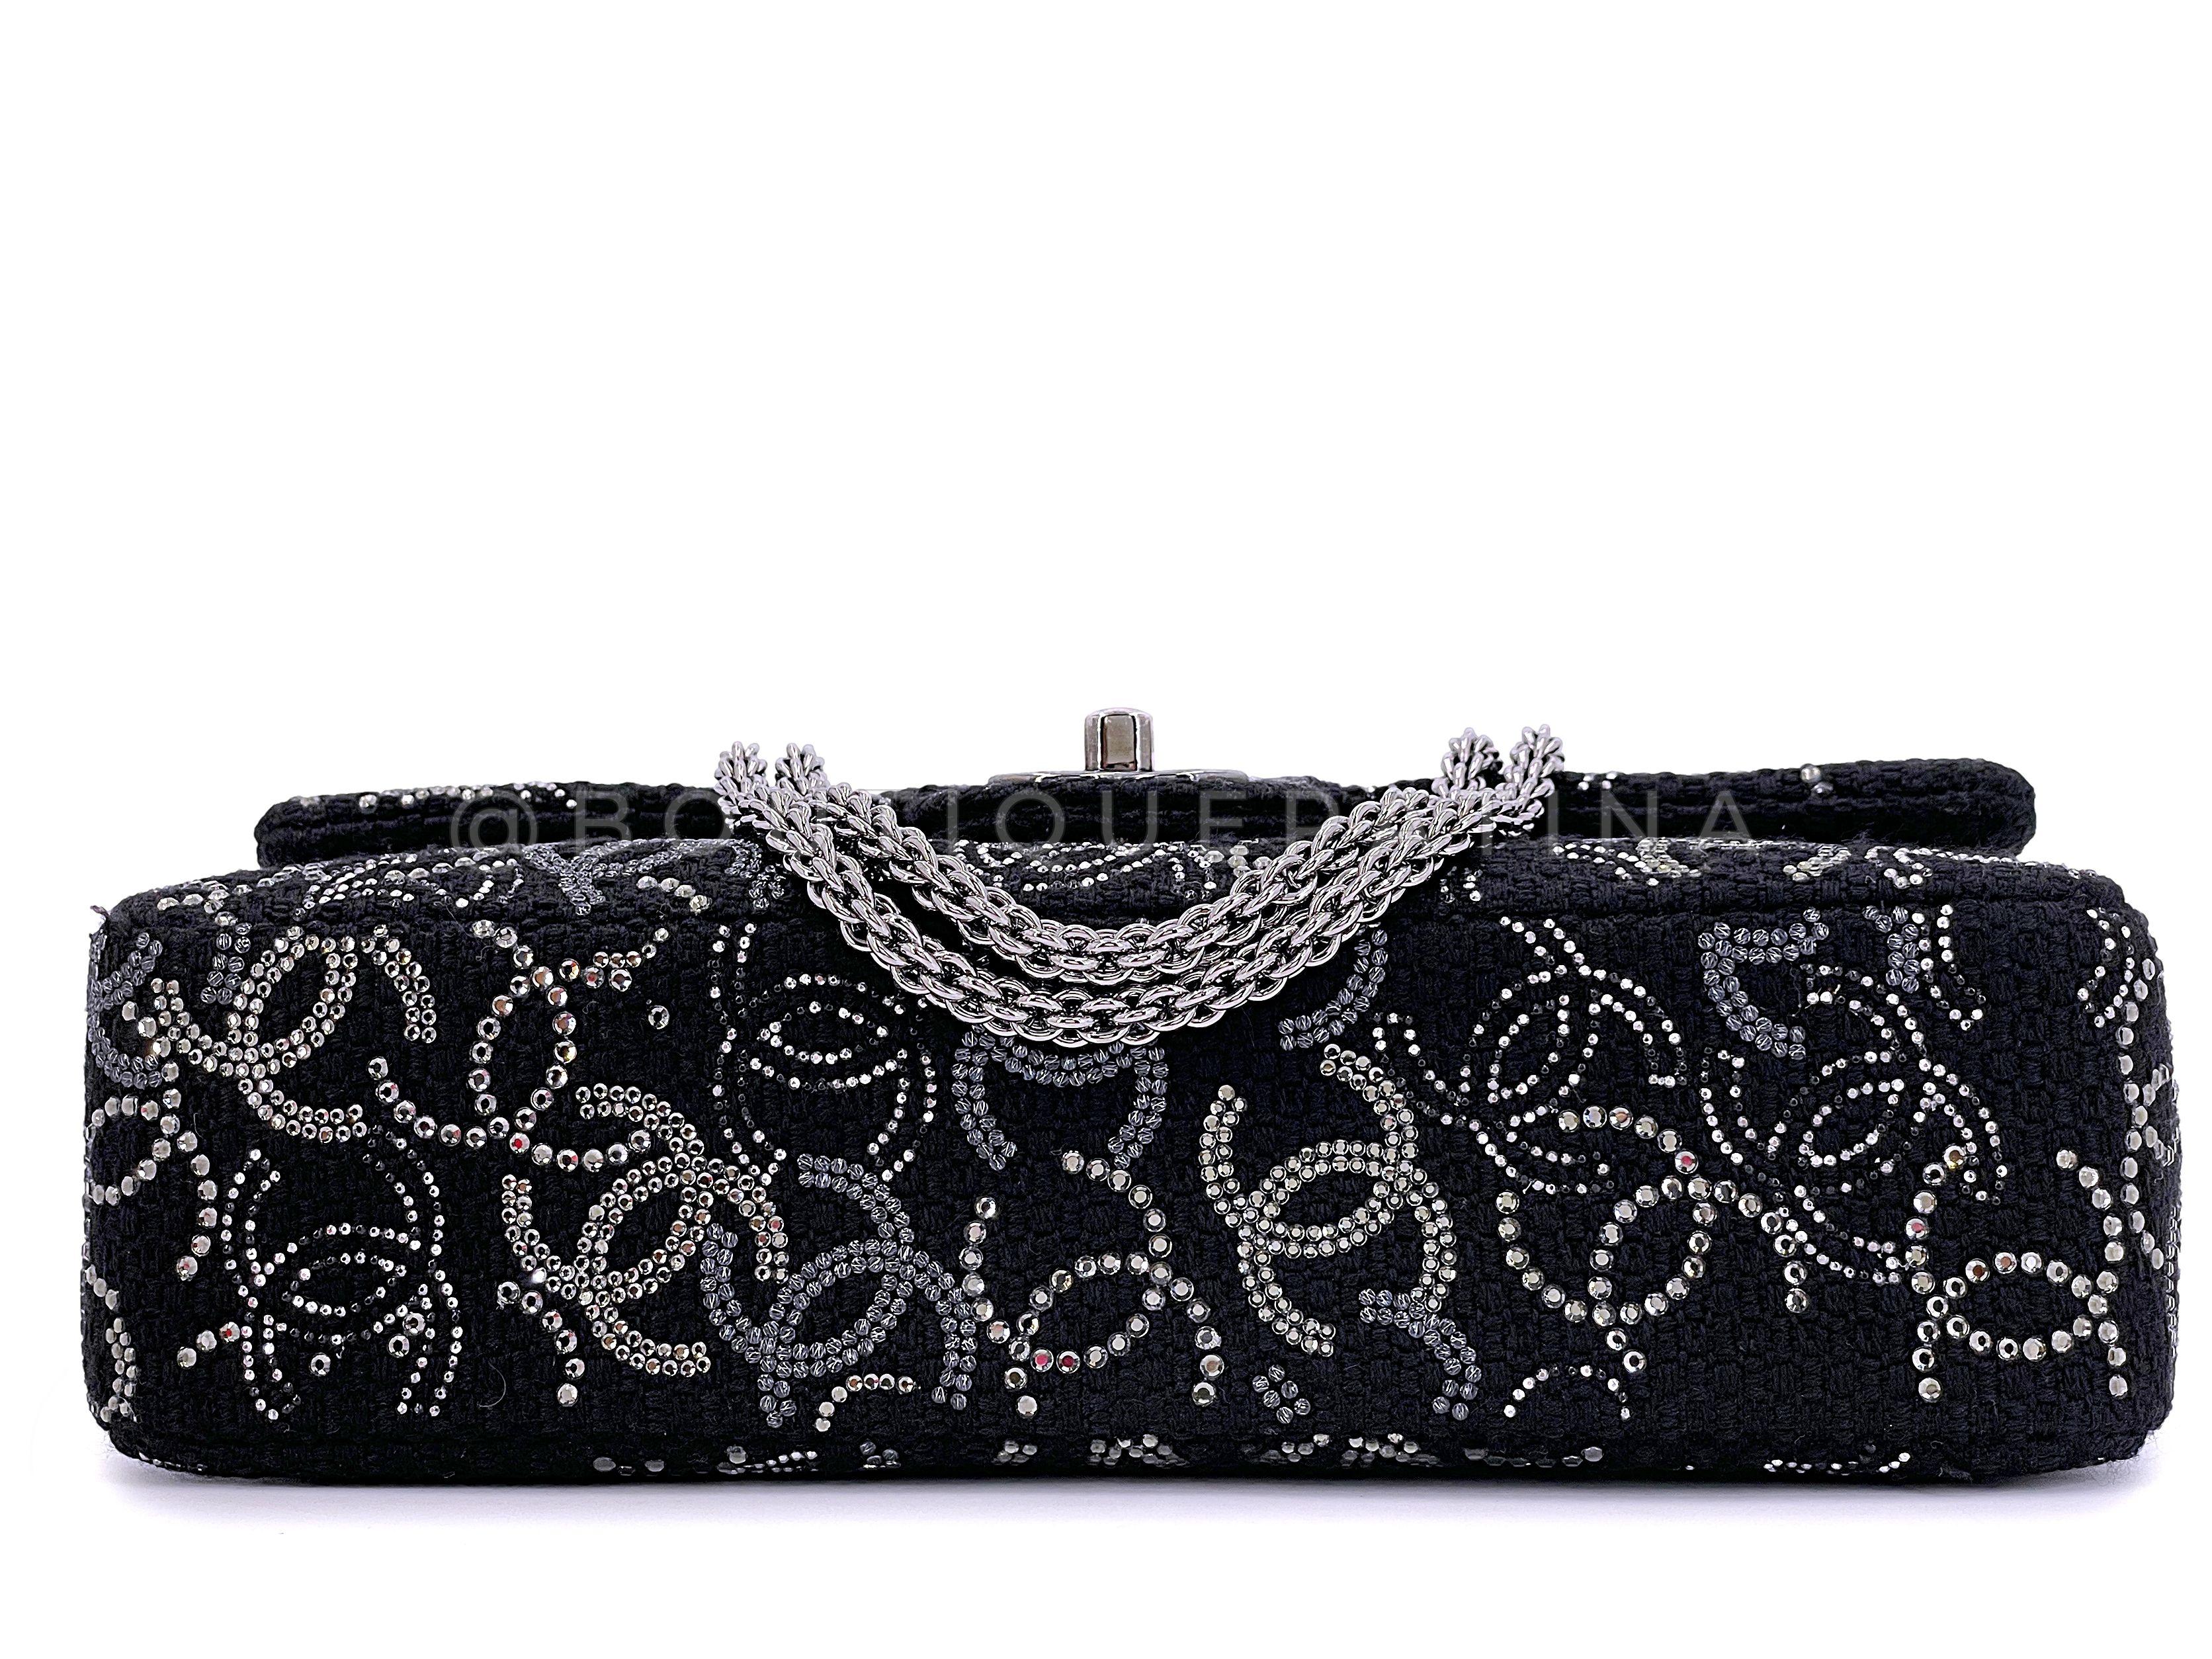 Chanel 2010 Black Paris-Shanghai Pudong Medium Classic Double Flap Bag 67299 For Sale 2